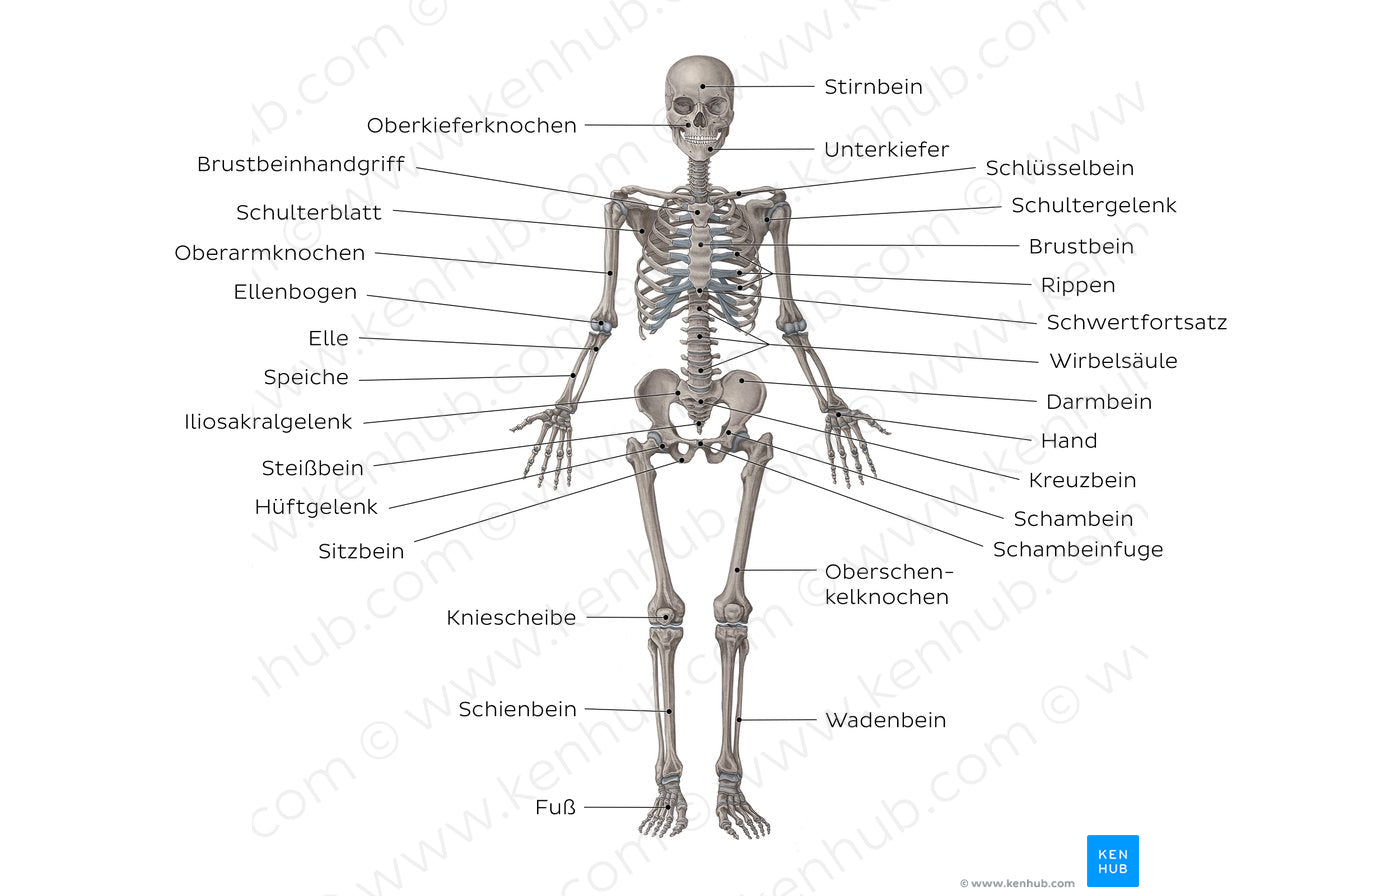 Skeletal system (German)